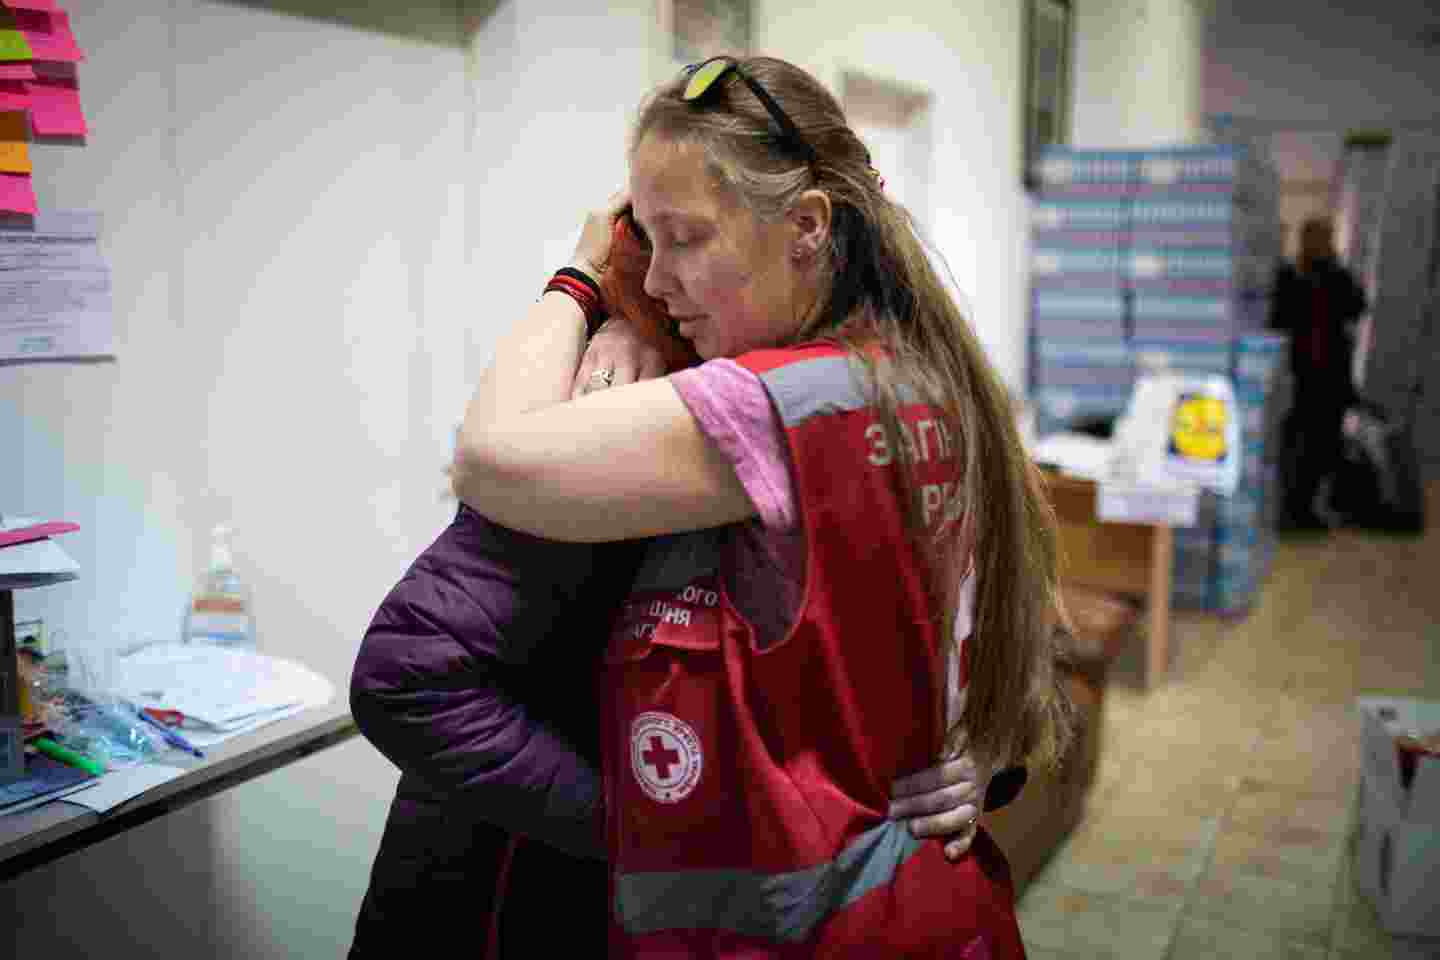 Henkilö Punaisen Ristin vaatteissa halaa toista henkilöä.